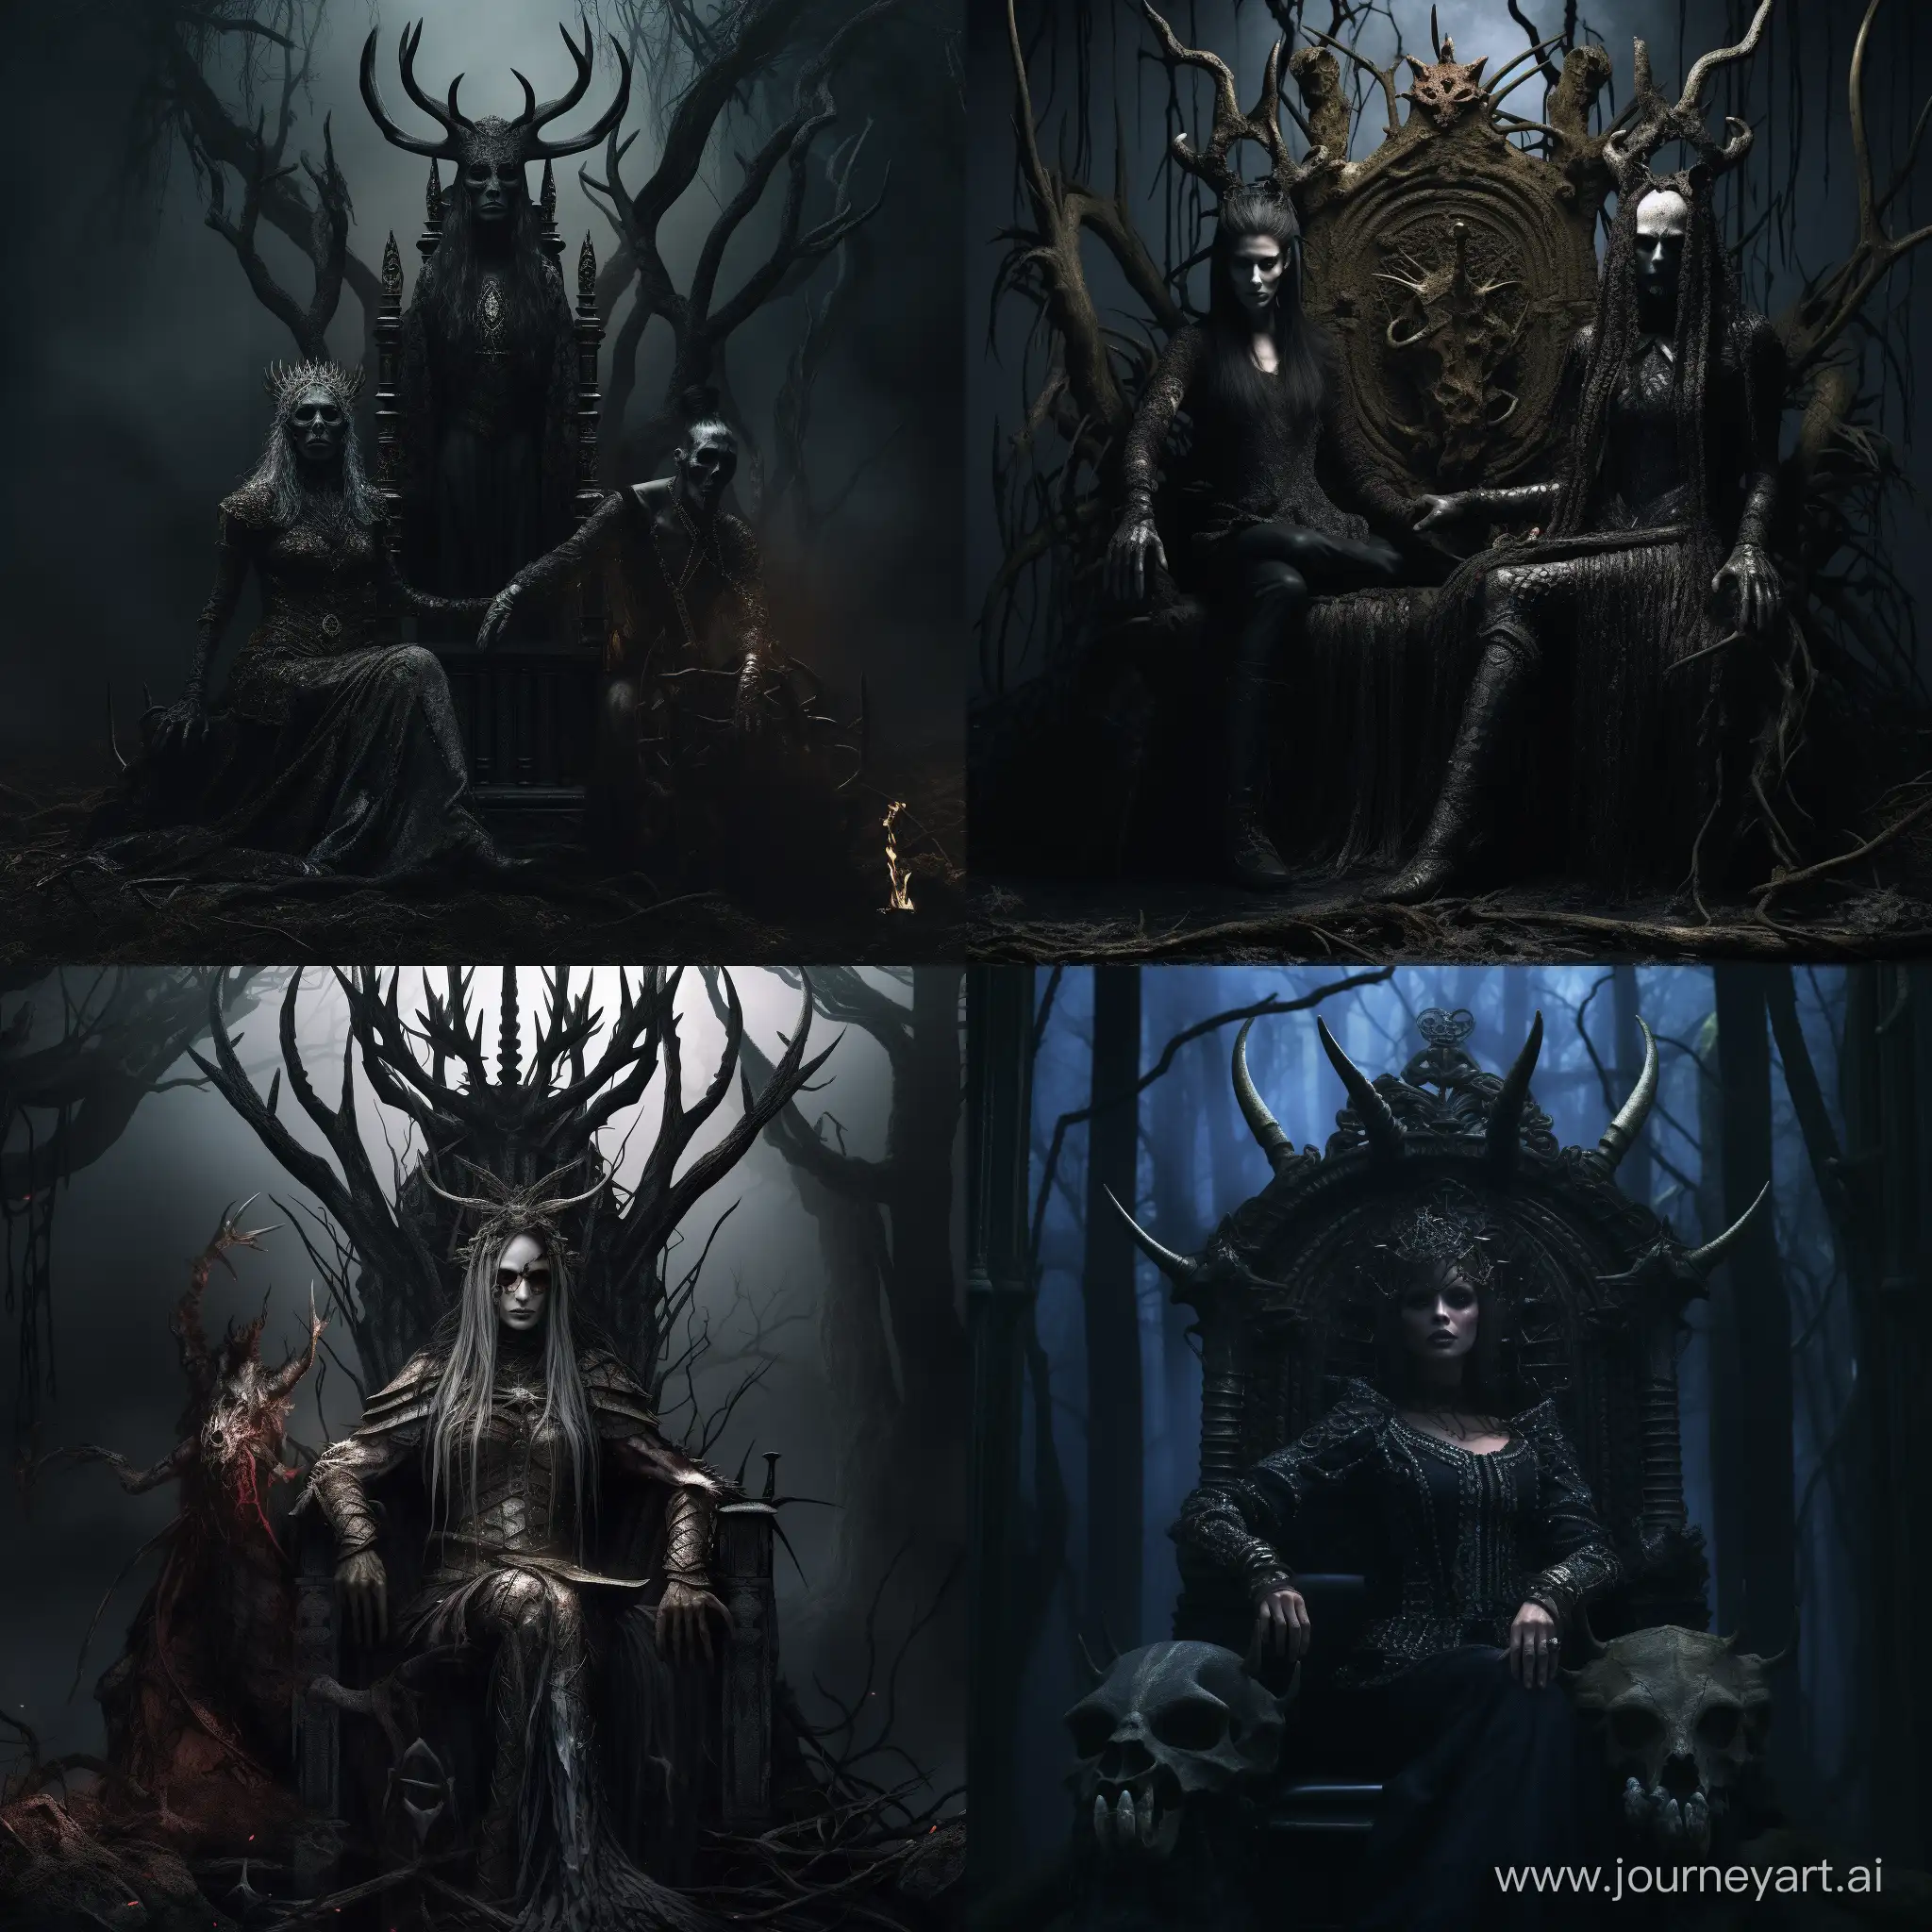 Dark forest queen and metalhead demon sitting on thrones